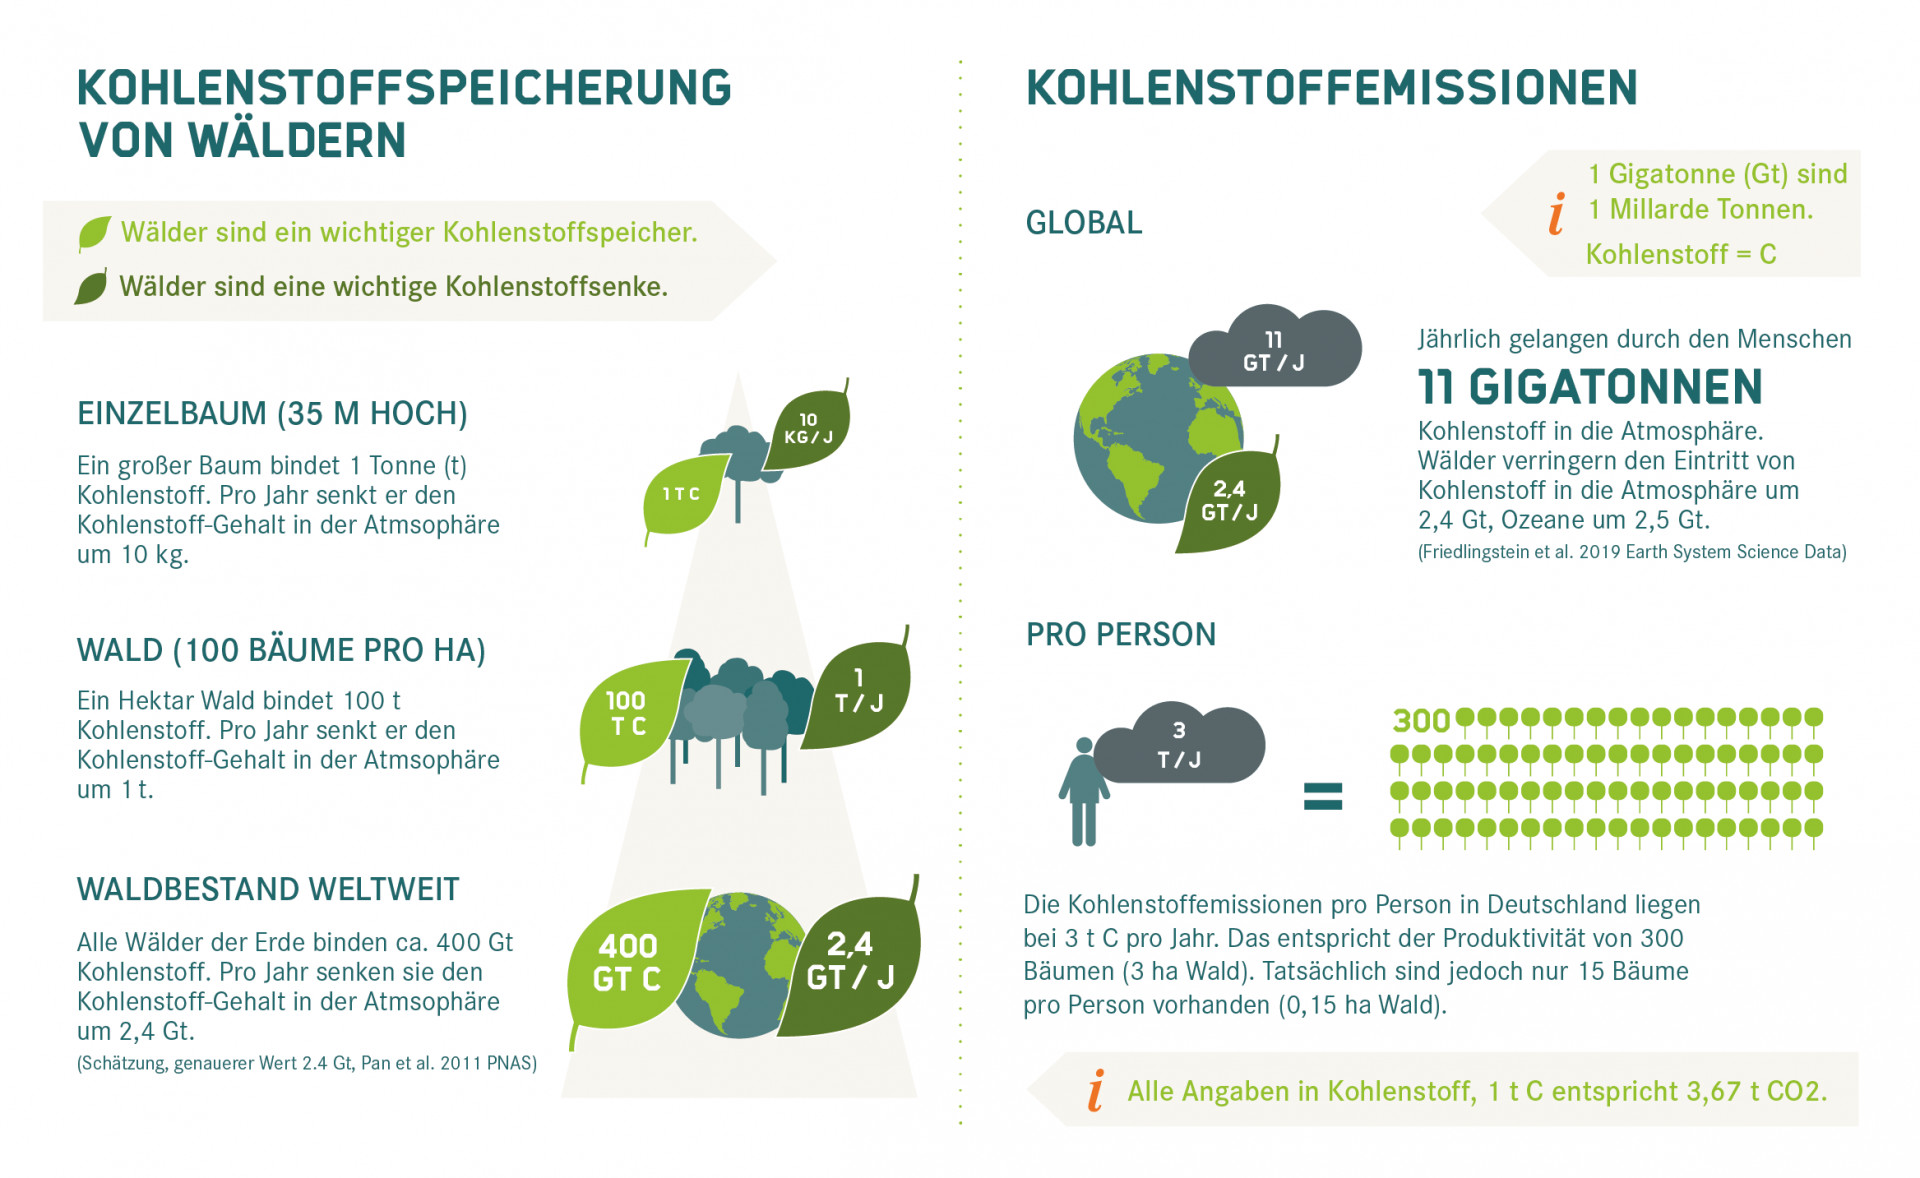 Kohlenstoffspeicherung und -emissionen von Wäldern im Vergleich